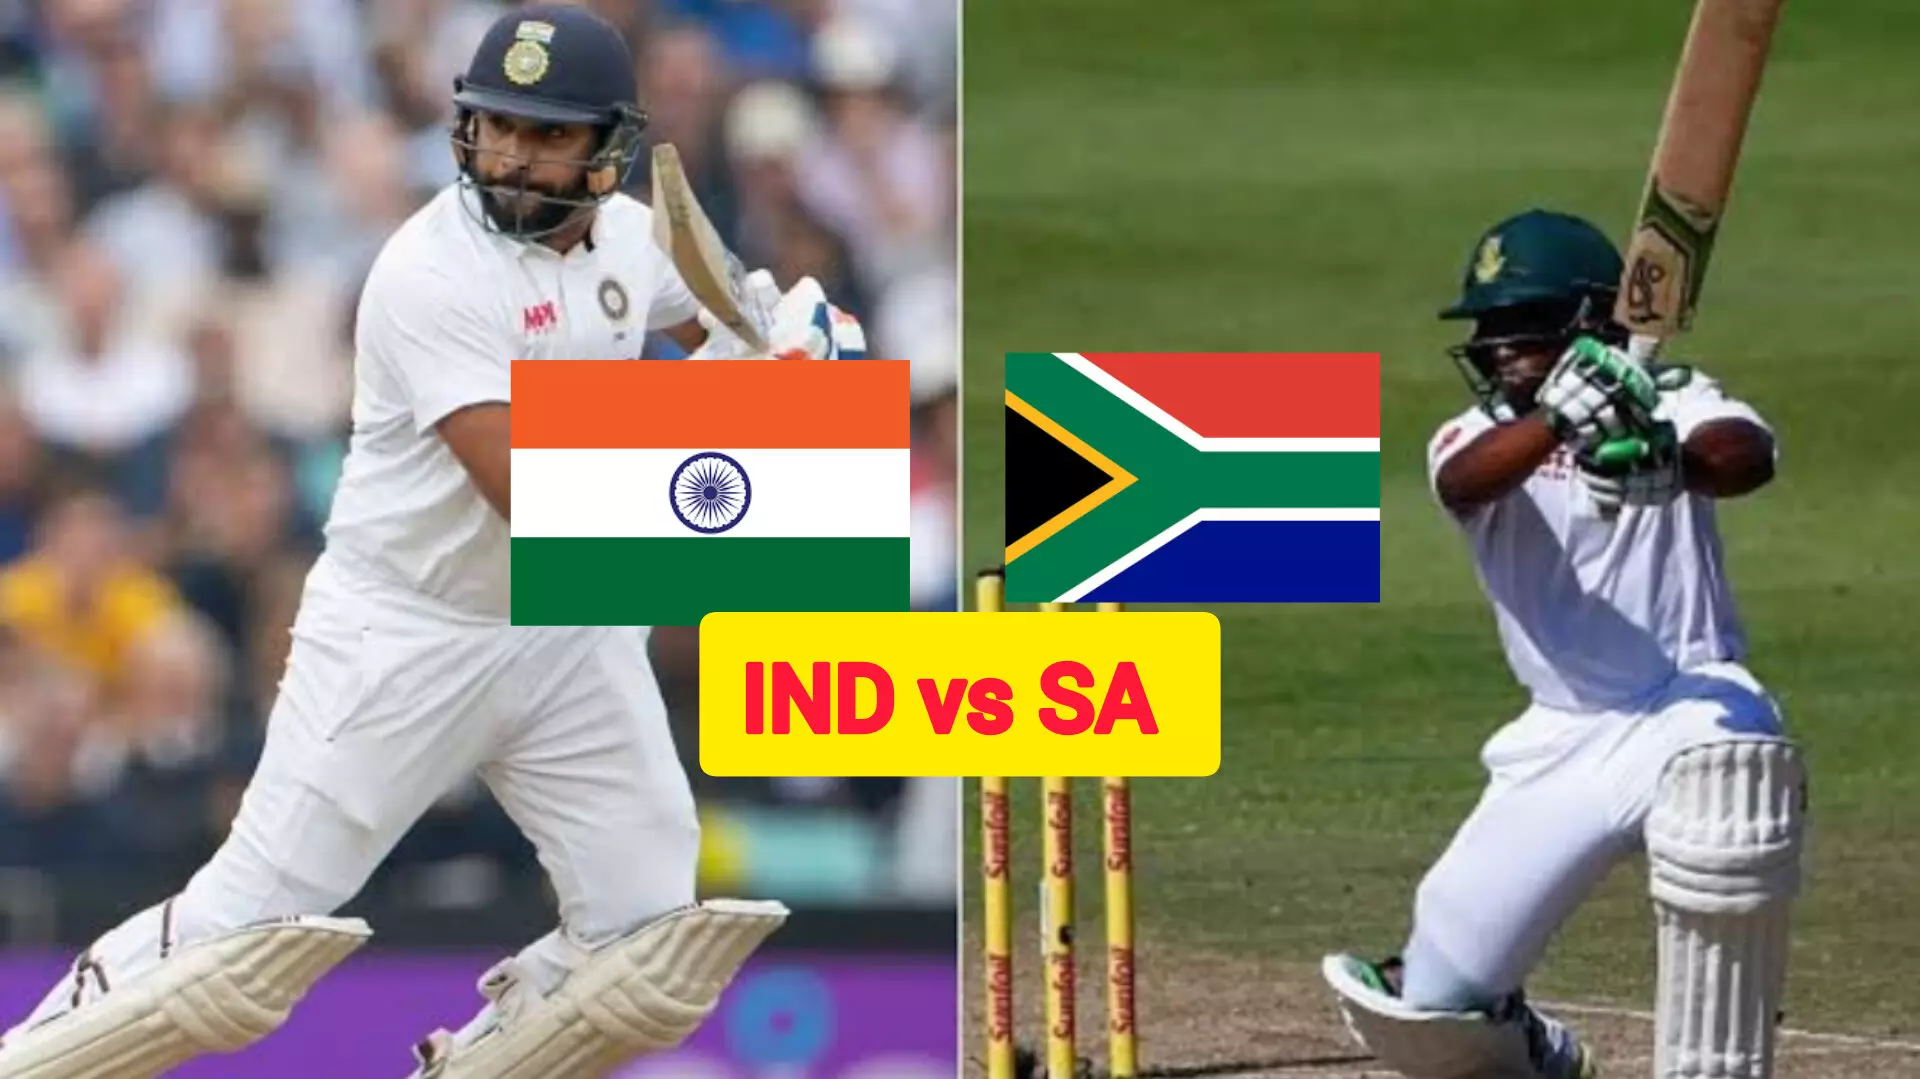 IND vs SA Test Series